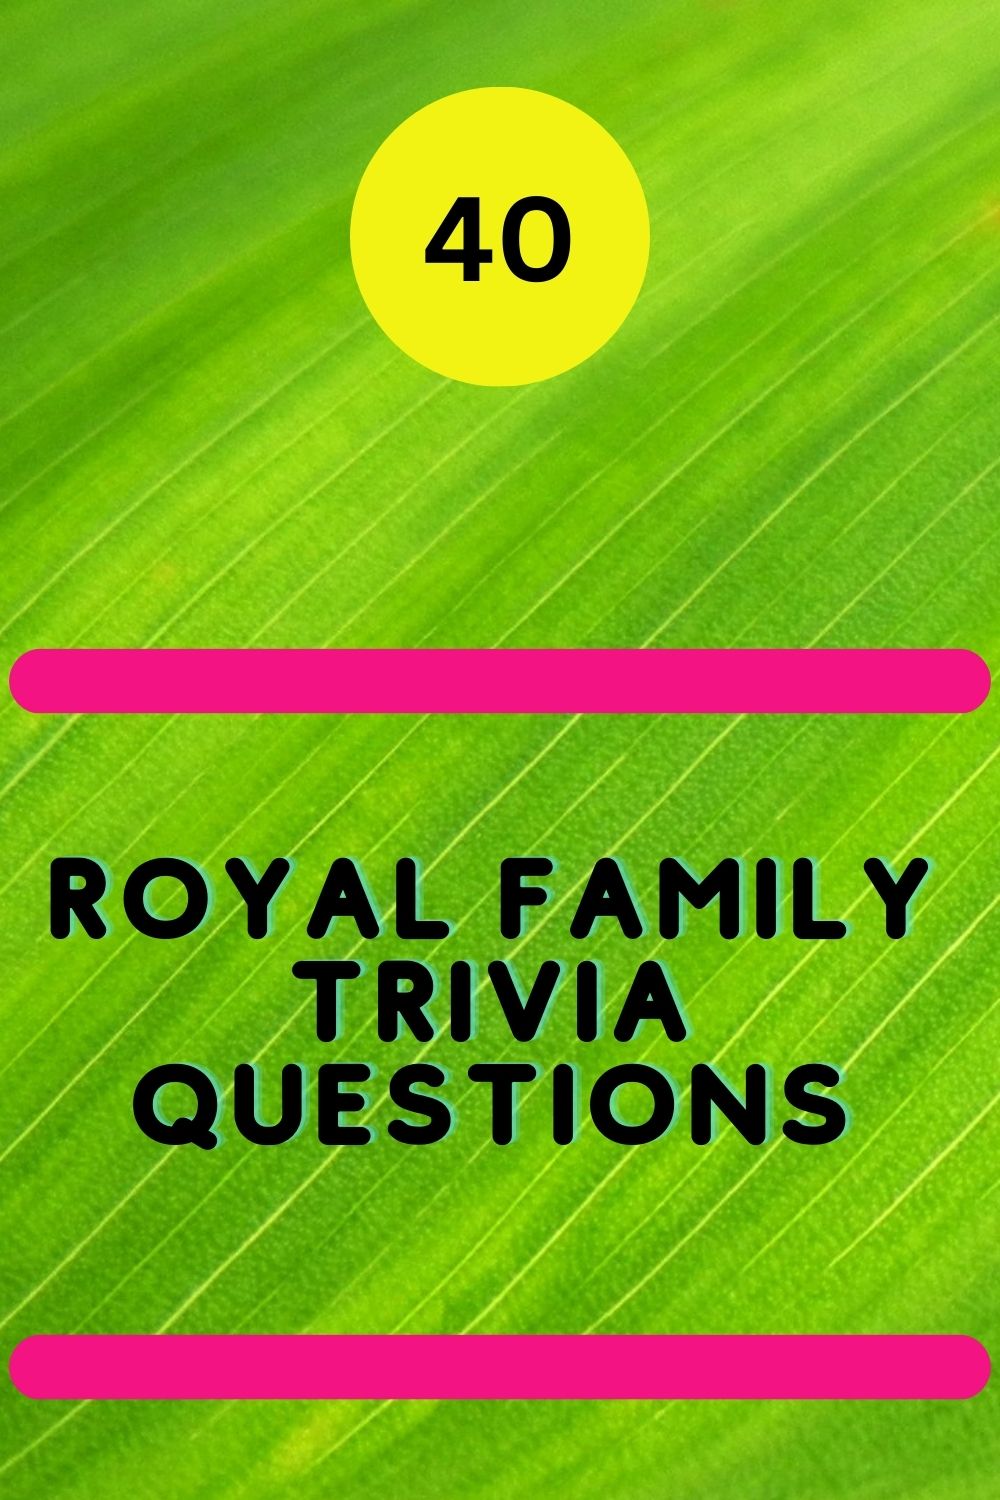 Royal Family Trivia